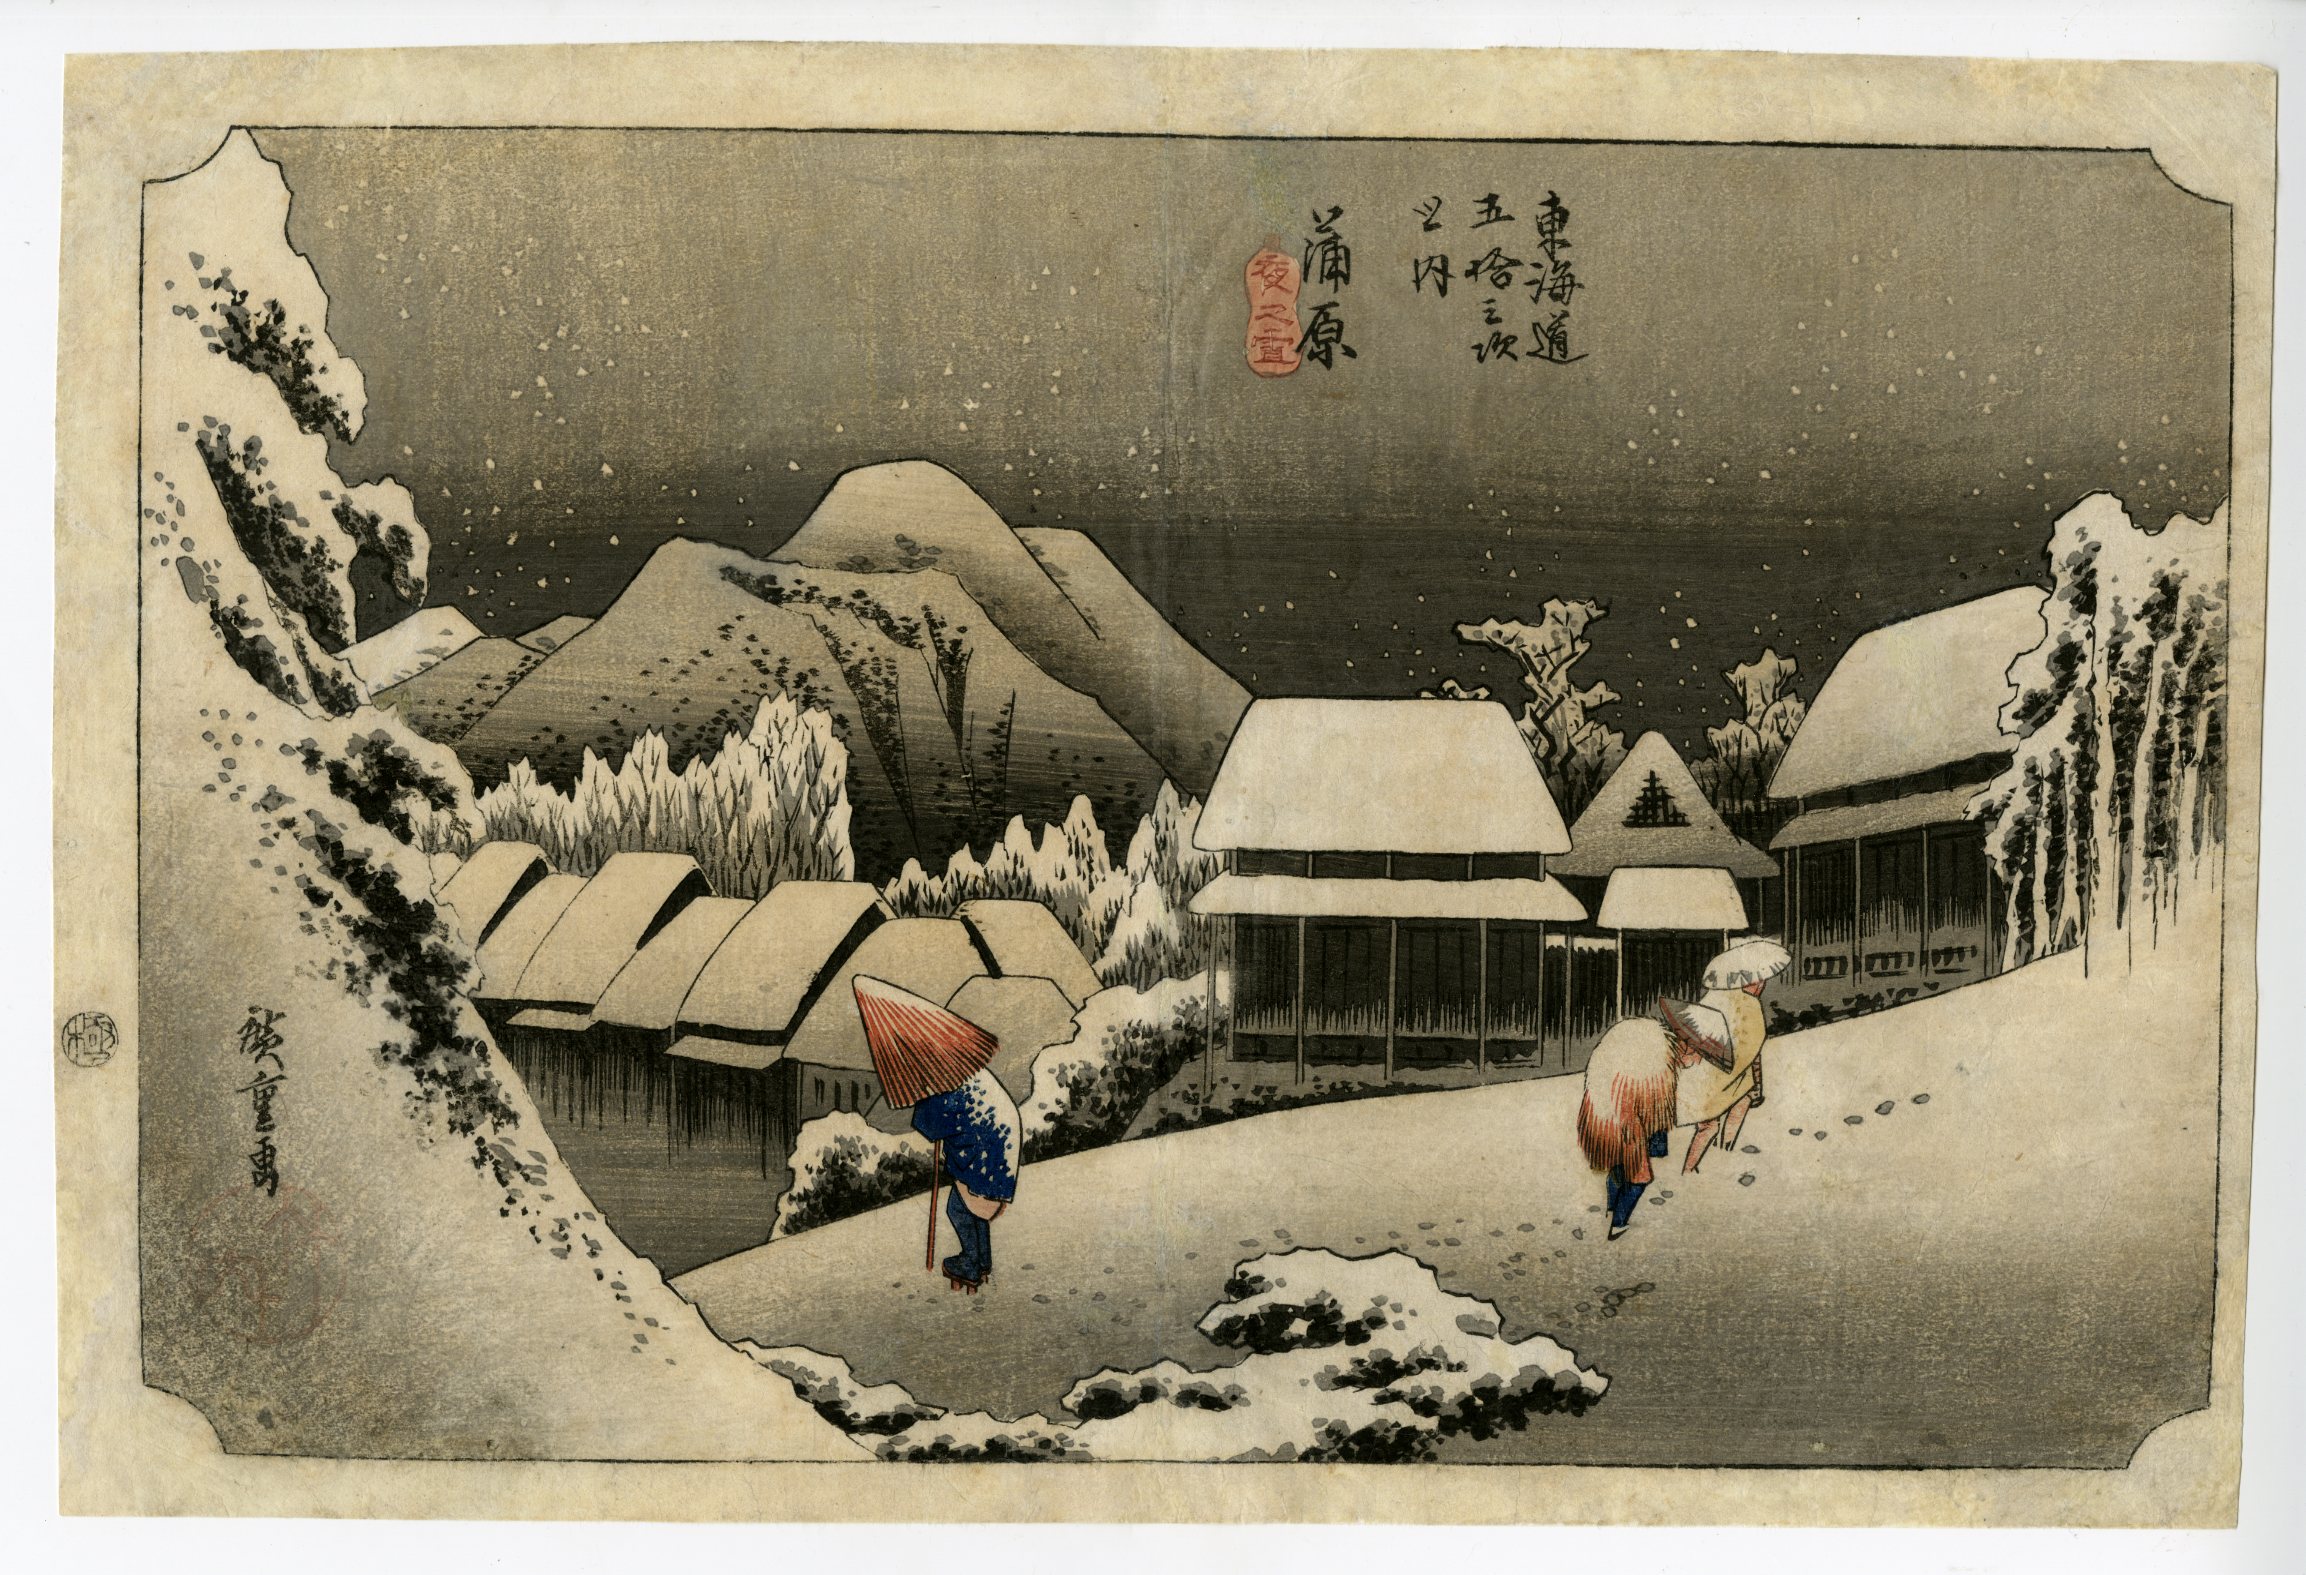 東海道五拾三次之内 16 蒲原《夜之雪》版画 歌川広重 木版画 - 版画